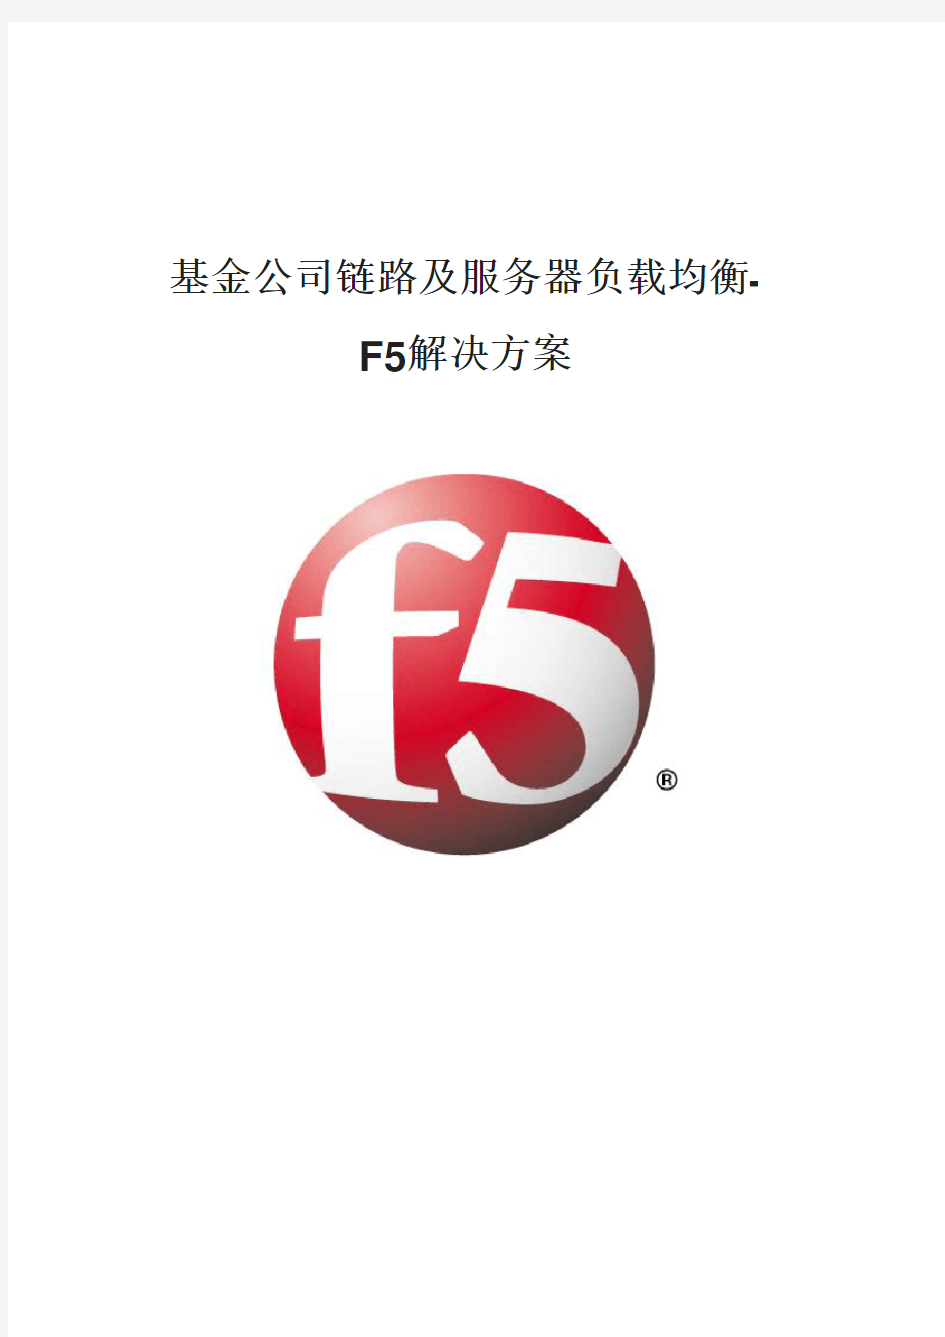 基金公司链路及服务器负载均衡-F5解决方案